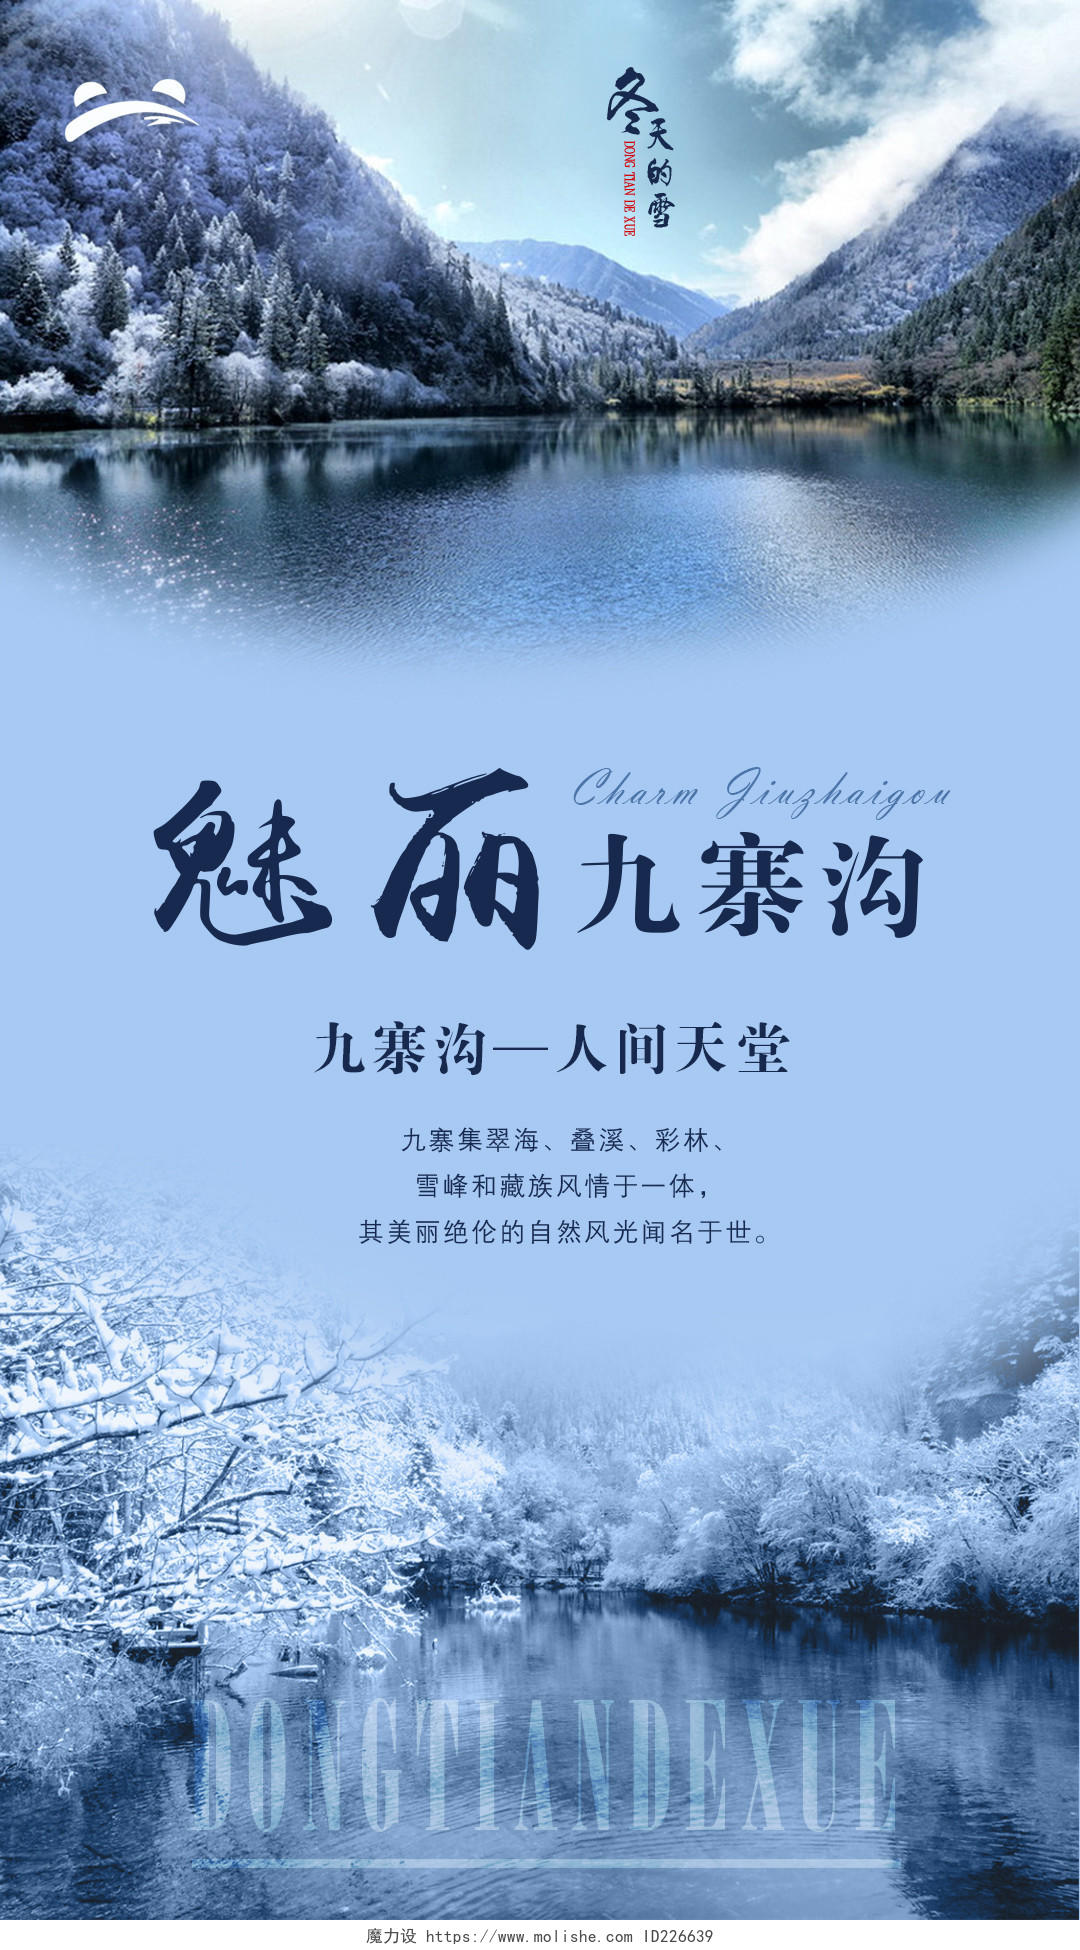 成都九寨沟旅游冬季魅力雪景景点宣传海报设计